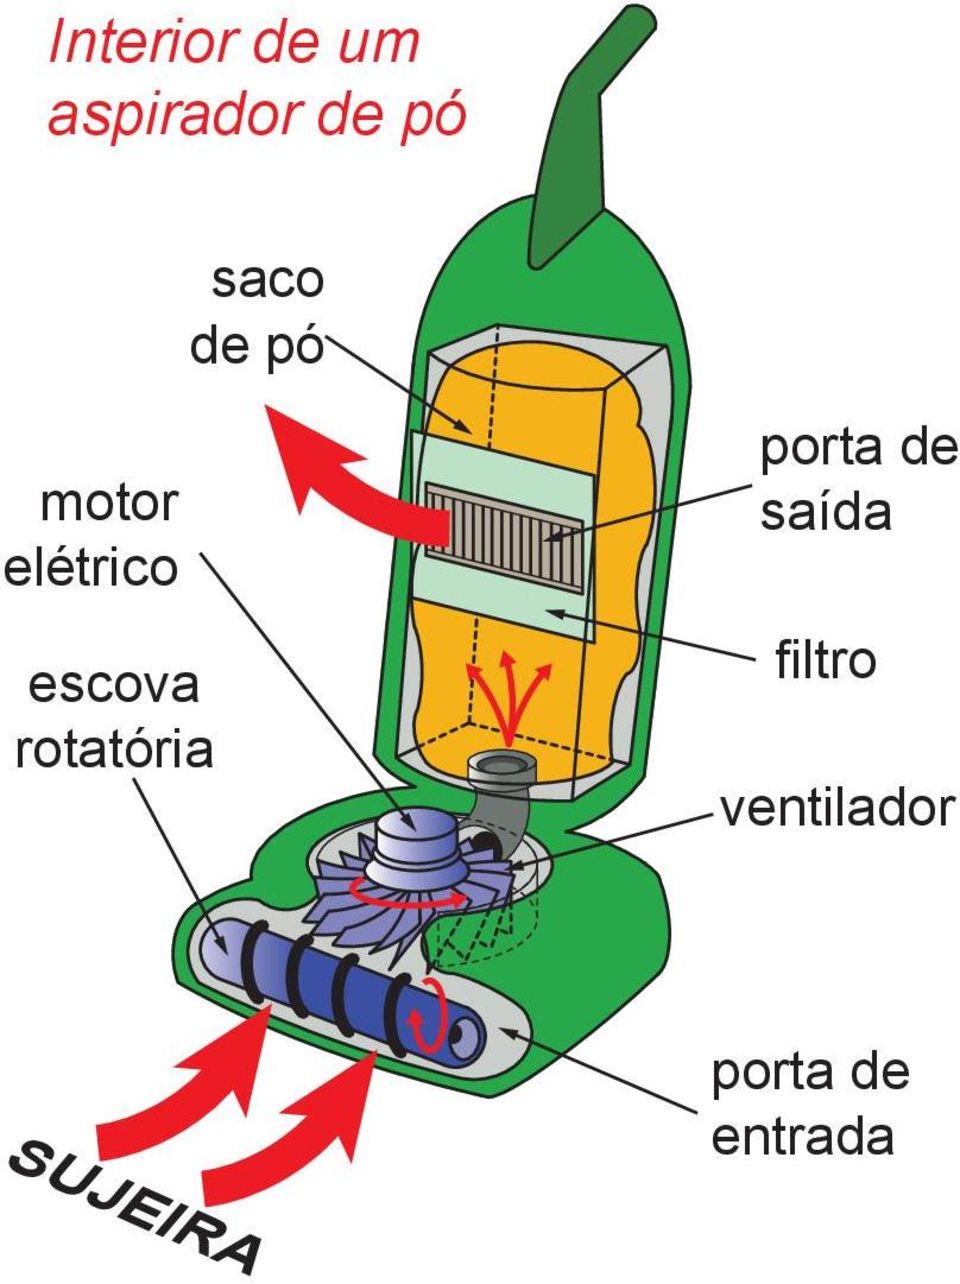 rotatória porta de saída filtro